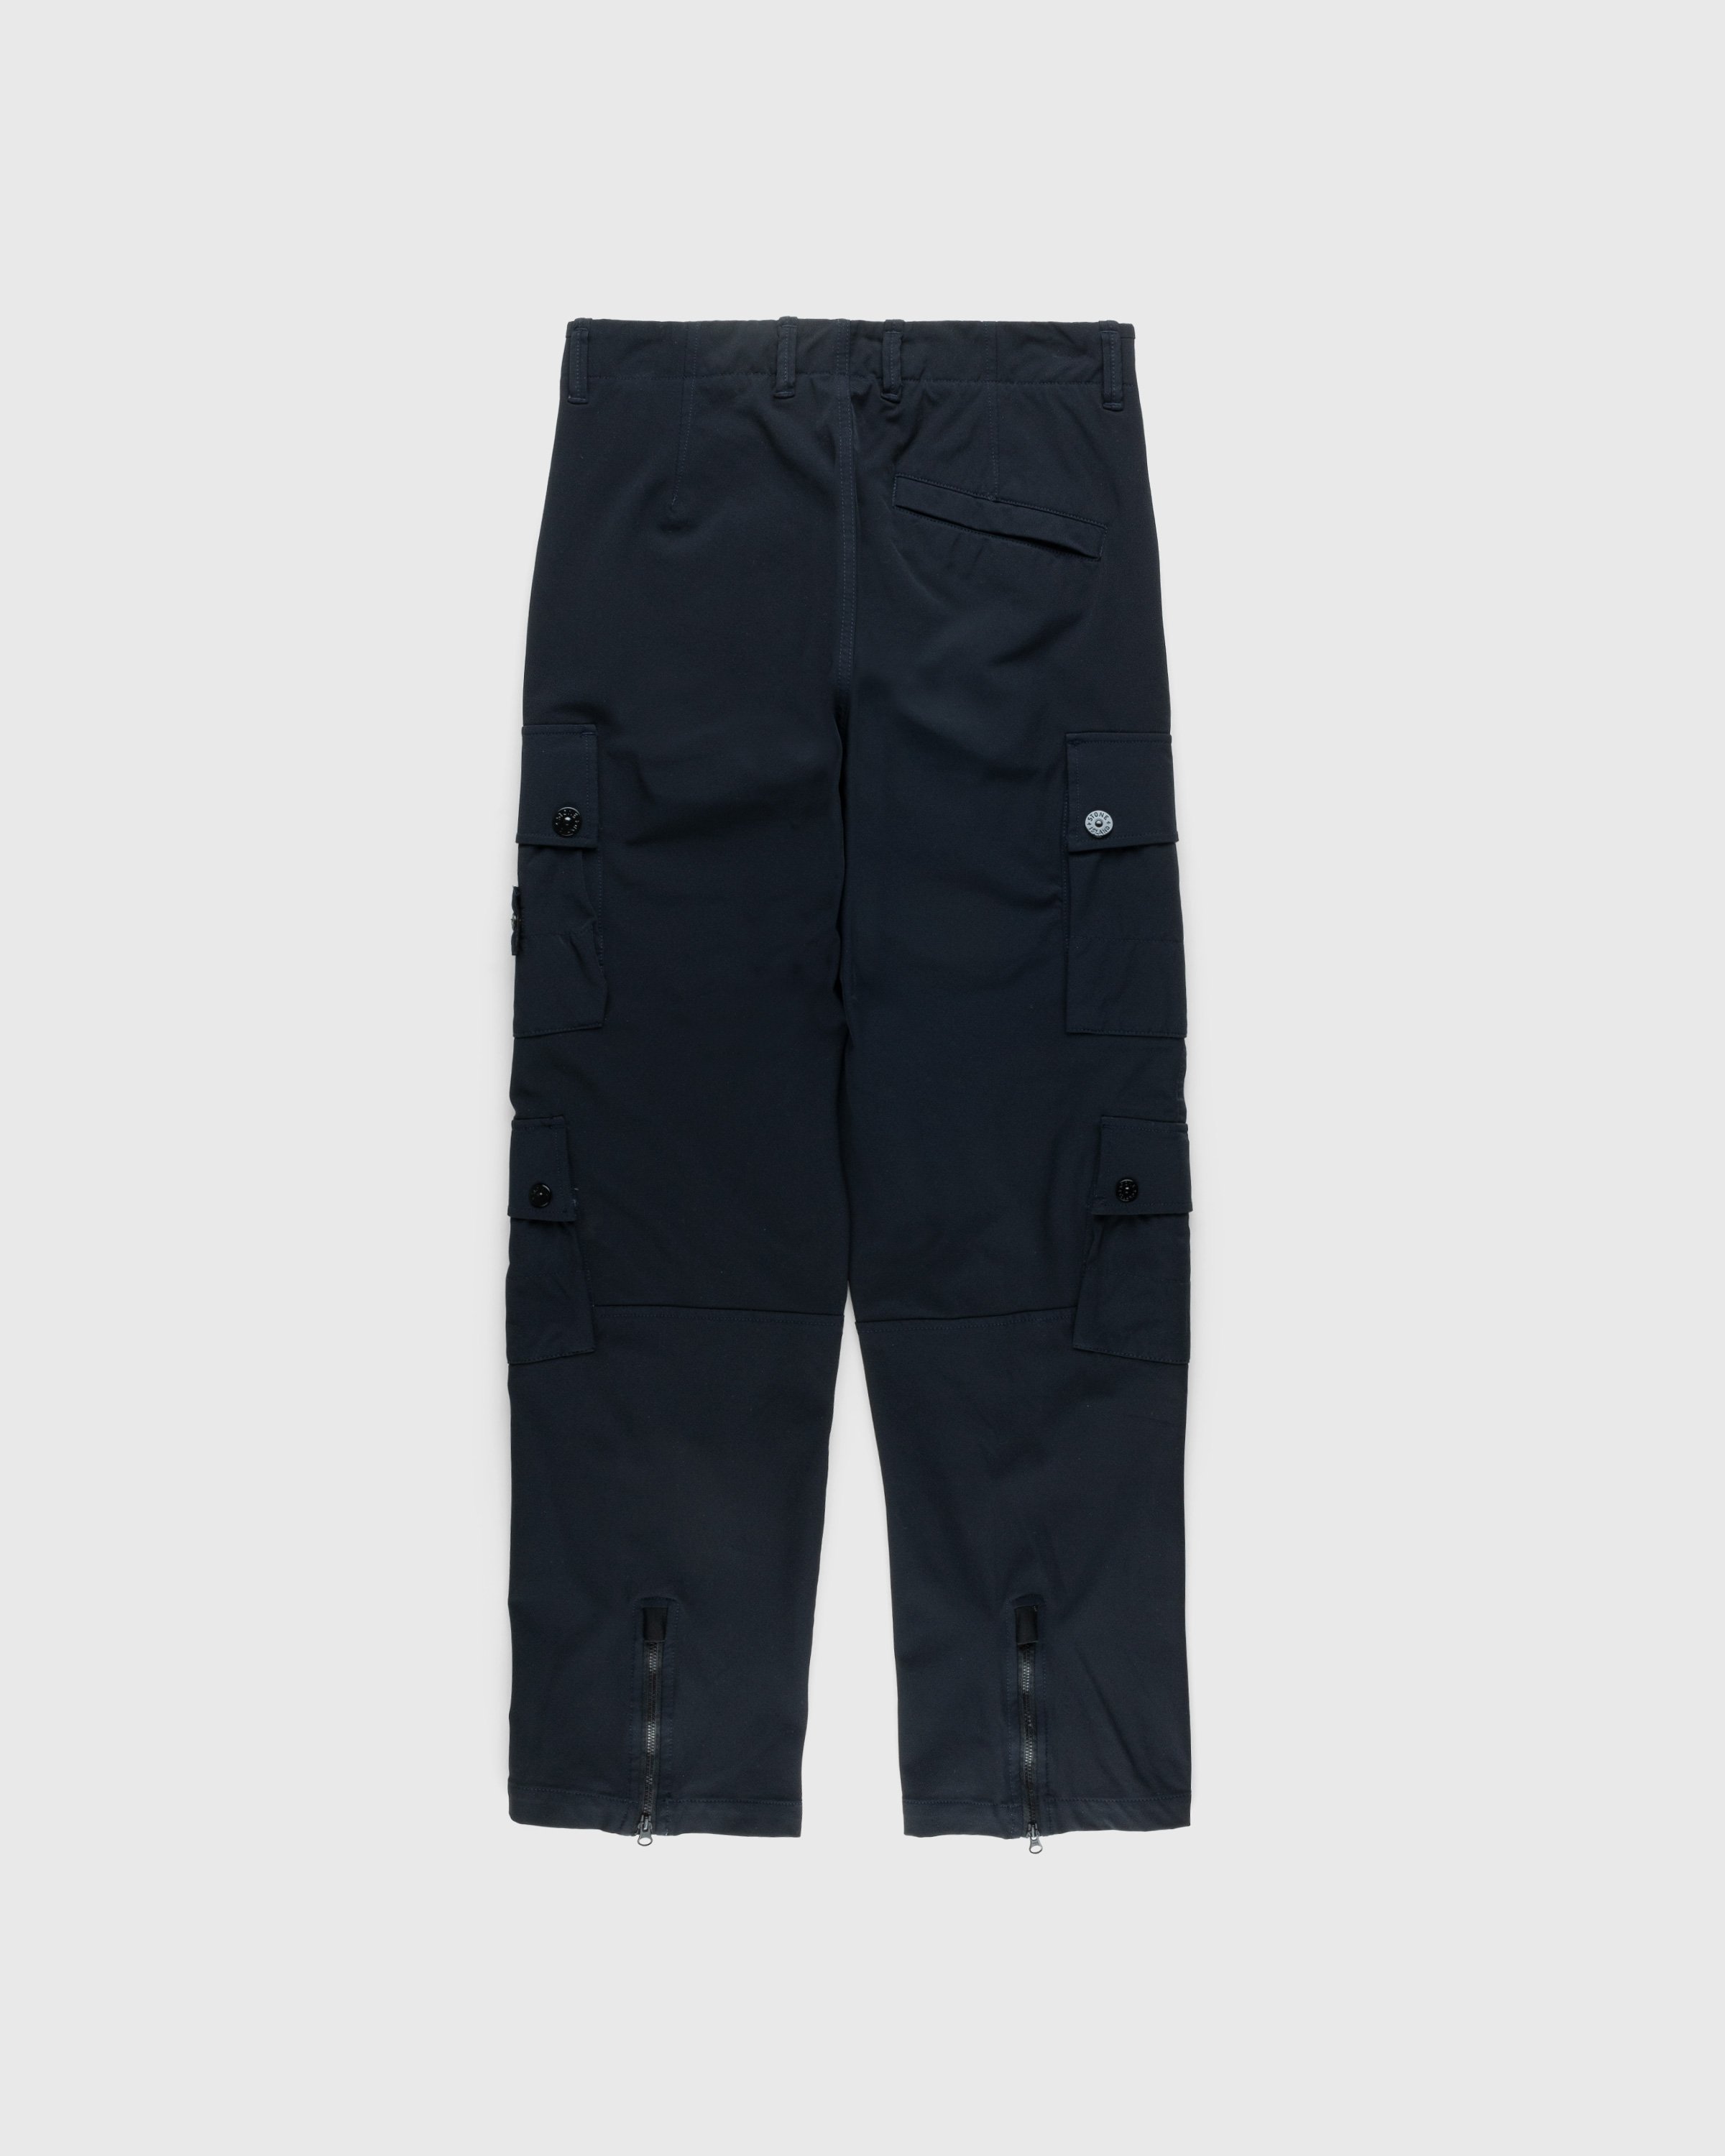 Stone Island - Nylon Cargo Pants Navy Blue - Clothing - Blue - Image 2